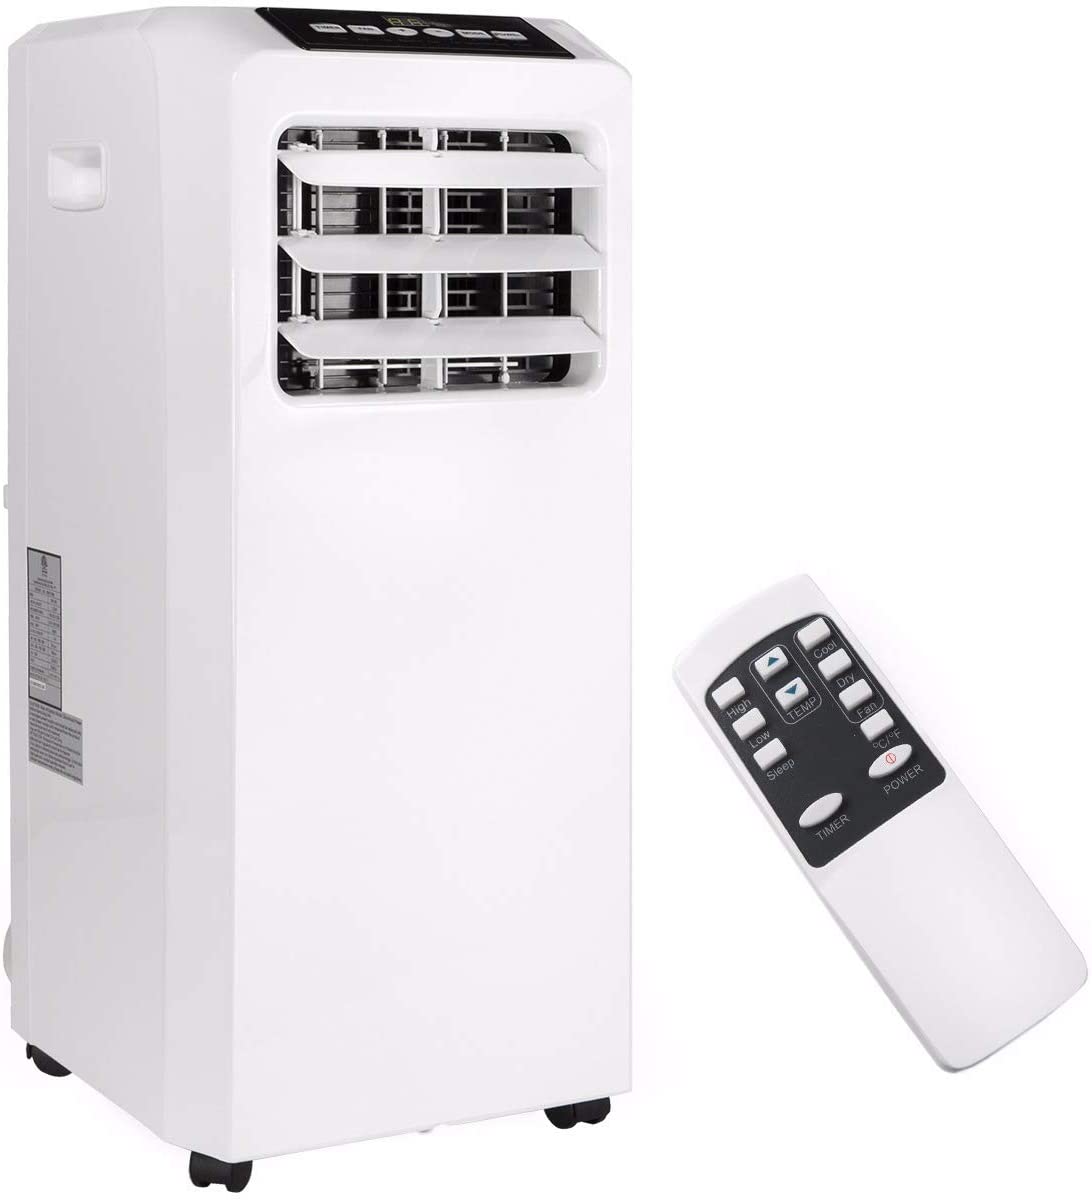 Barton 4-in-1 Portable Air Conditioner